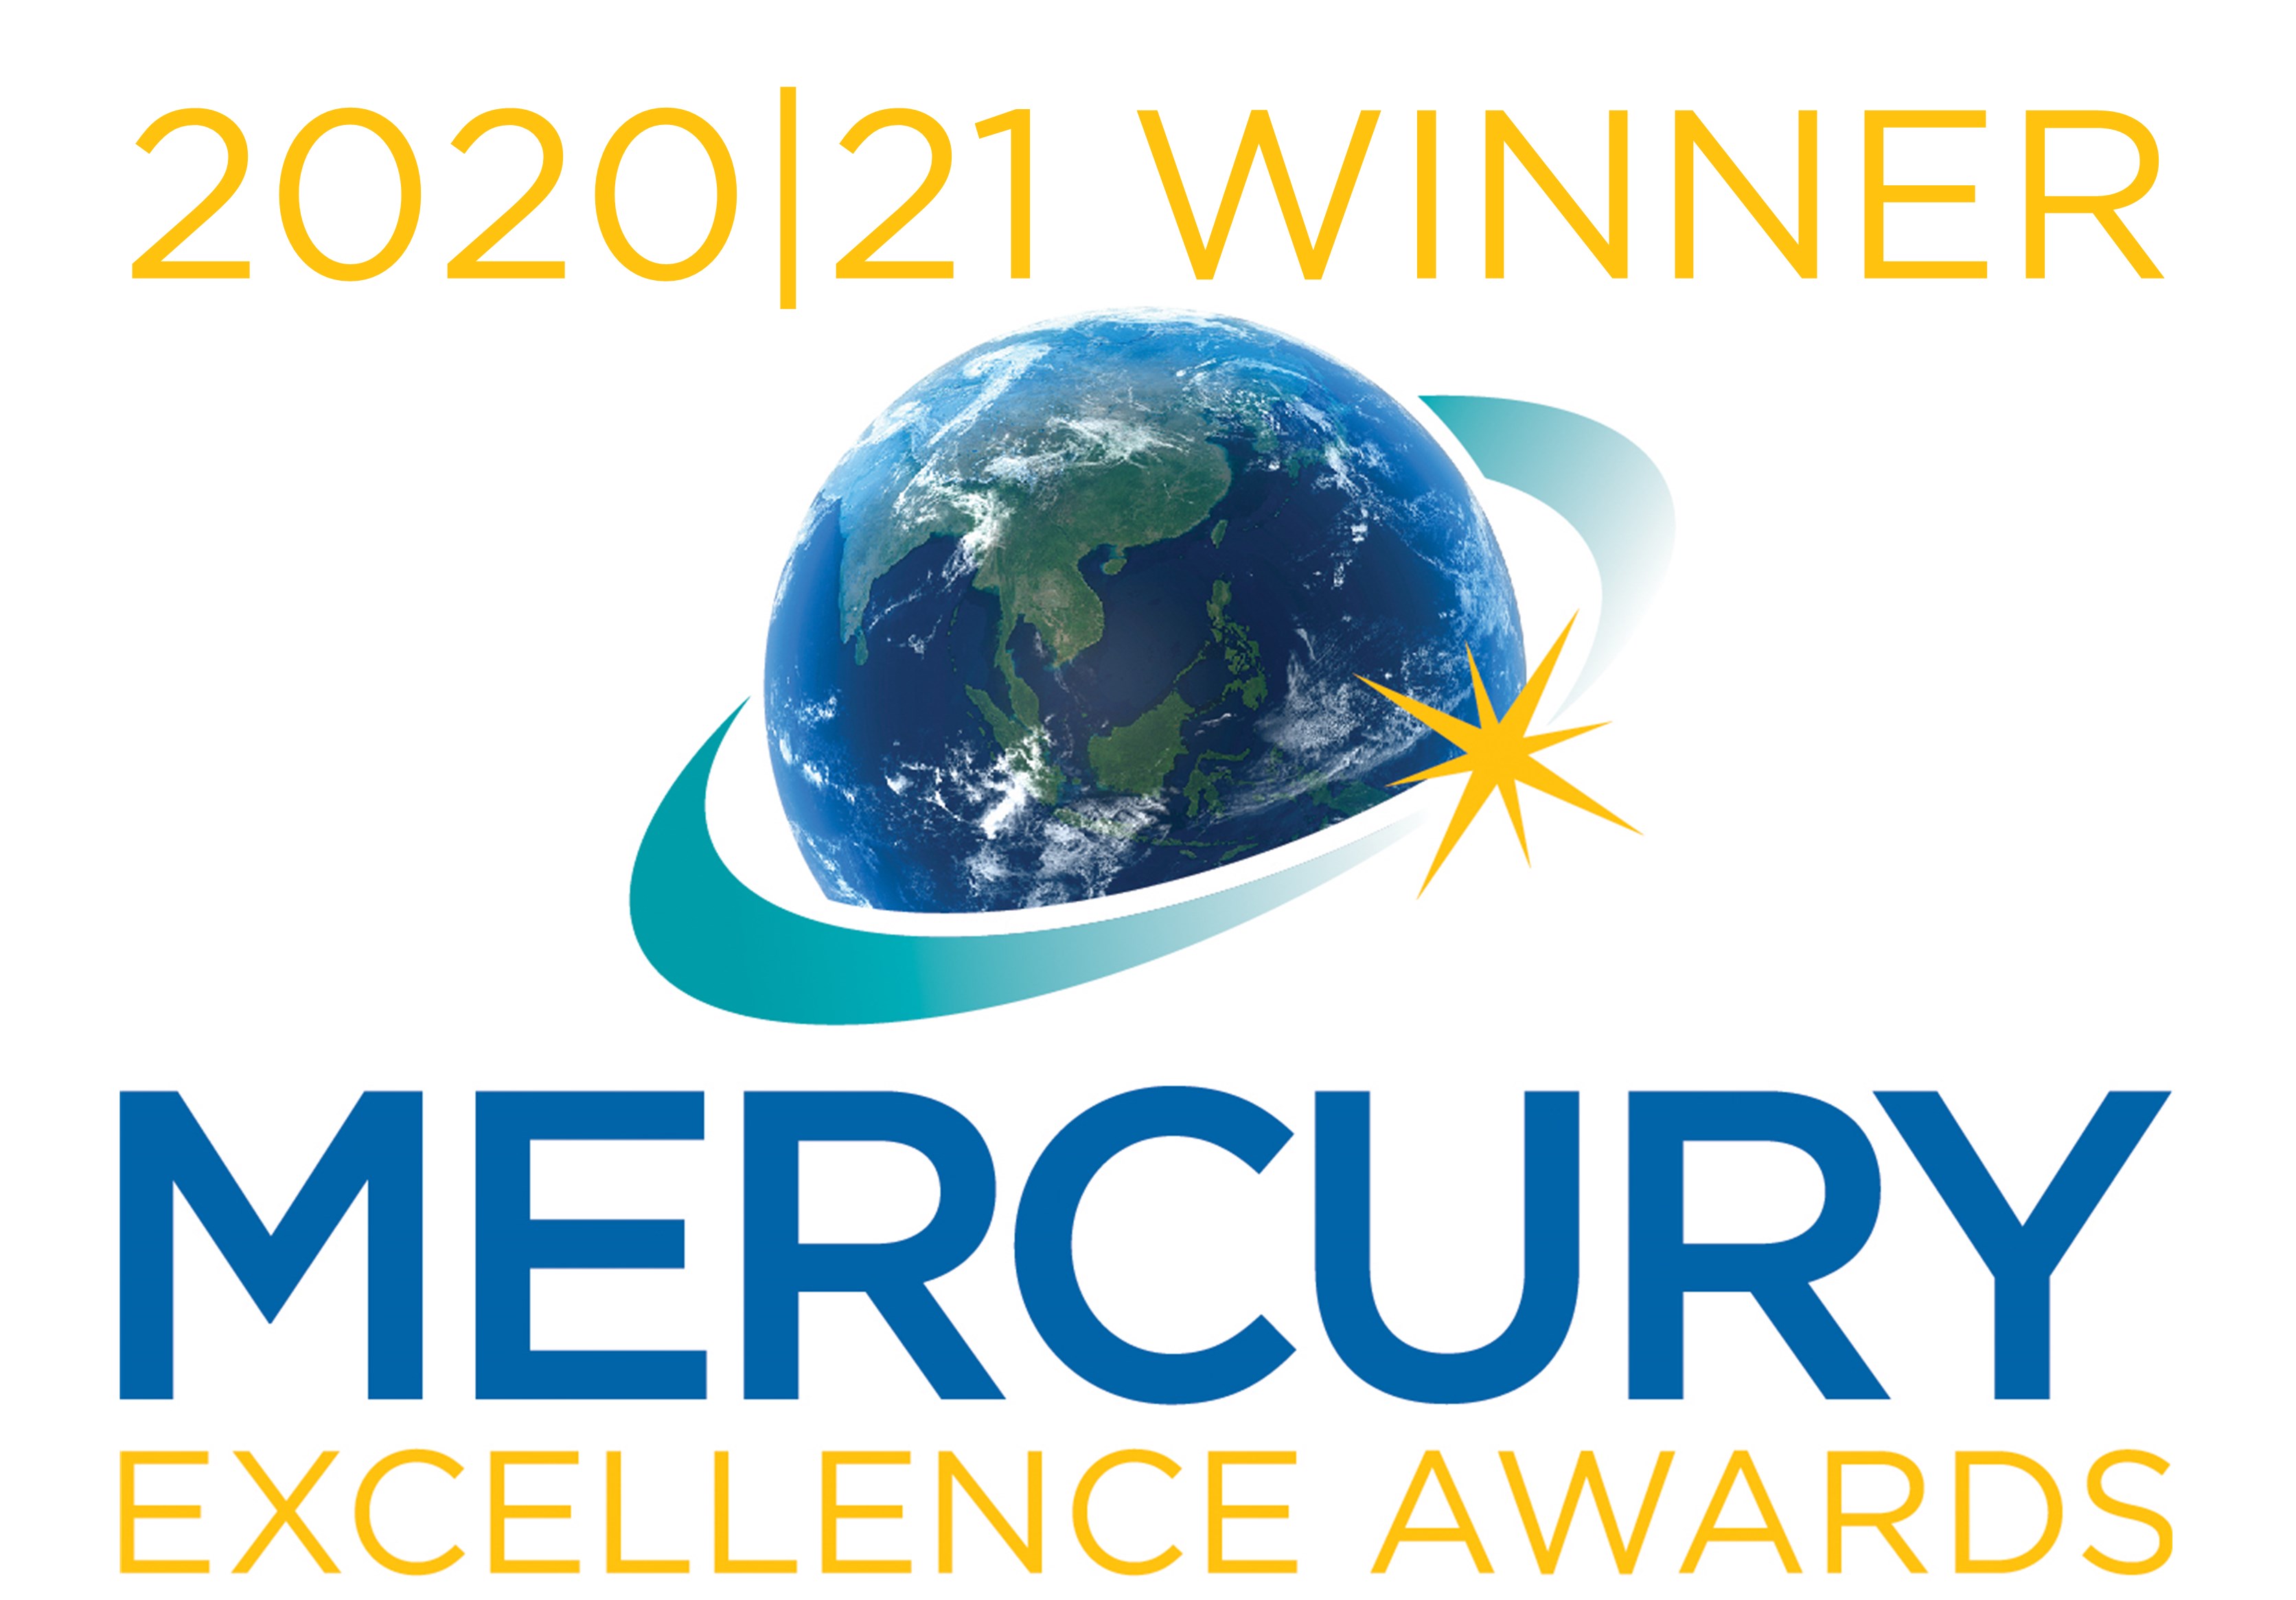 “活动与成就”短片<<无惧挑战 迈步向前>>获2020/2021 Mercury Excellence Awards颁发“影片 - 荣誉大奖”的最高殊荣